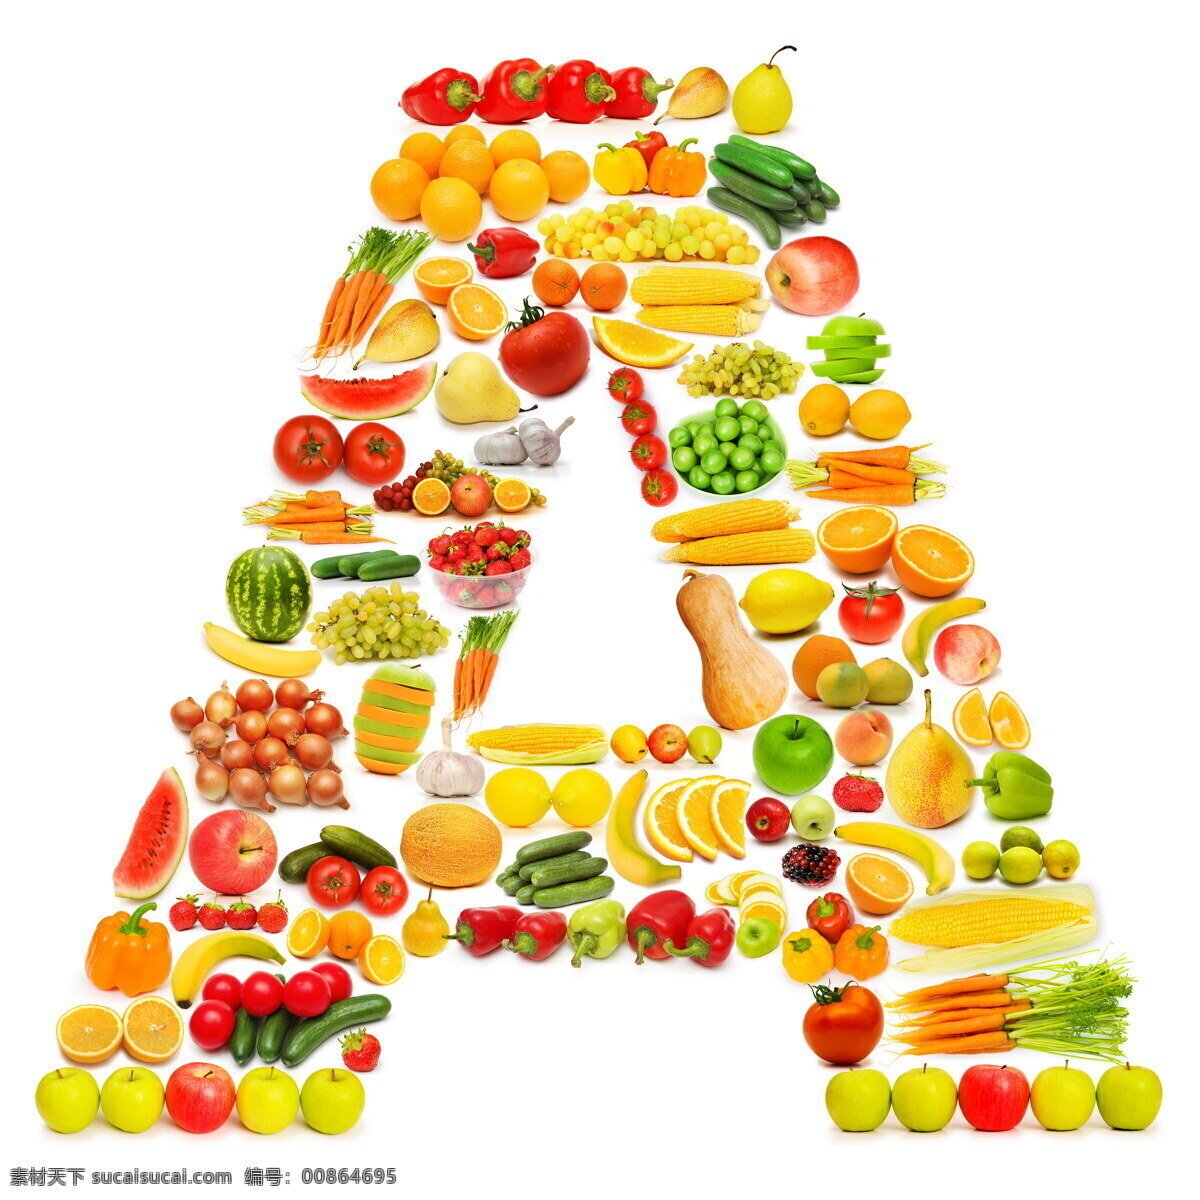 蔬菜水果 组成 字母 a 辣椒 葡萄 黄瓜 橙子 香蕉 蔬菜 水果 食物 水果蔬菜 餐饮美食 书画文字 文化艺术 白色